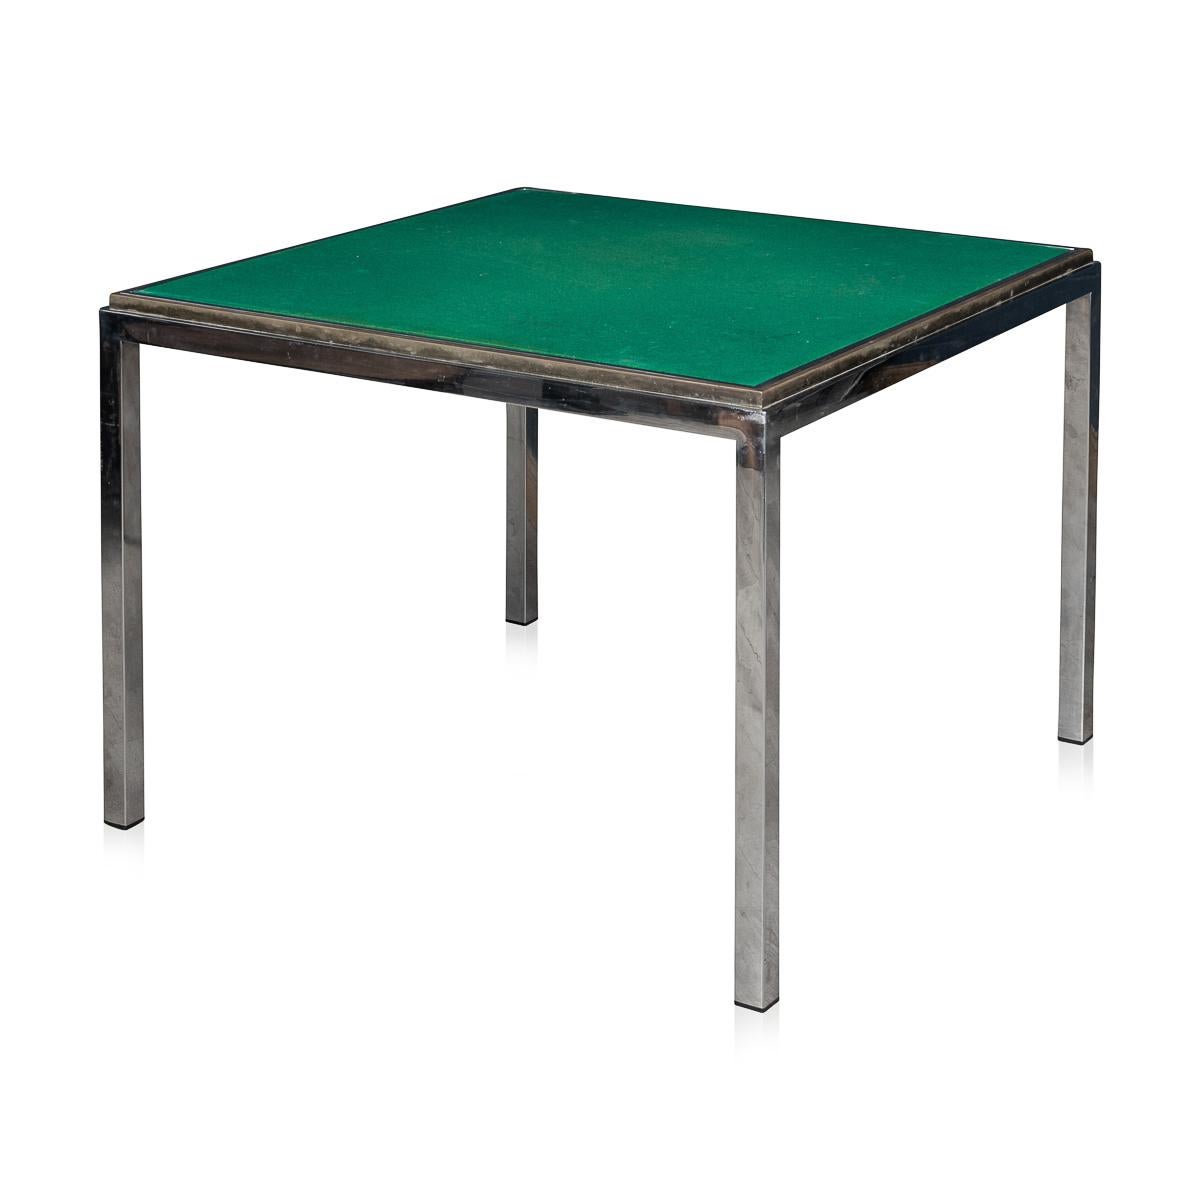 Superbe table de jeu et table de salle à manger métamorphique attribuée au célèbre Romeo Rega pour Metalarte, fabriquée en Italie vers 1980. Cette pièce exquise présente un cadre en laiton et en chrome poli, illustrant les éléments de design